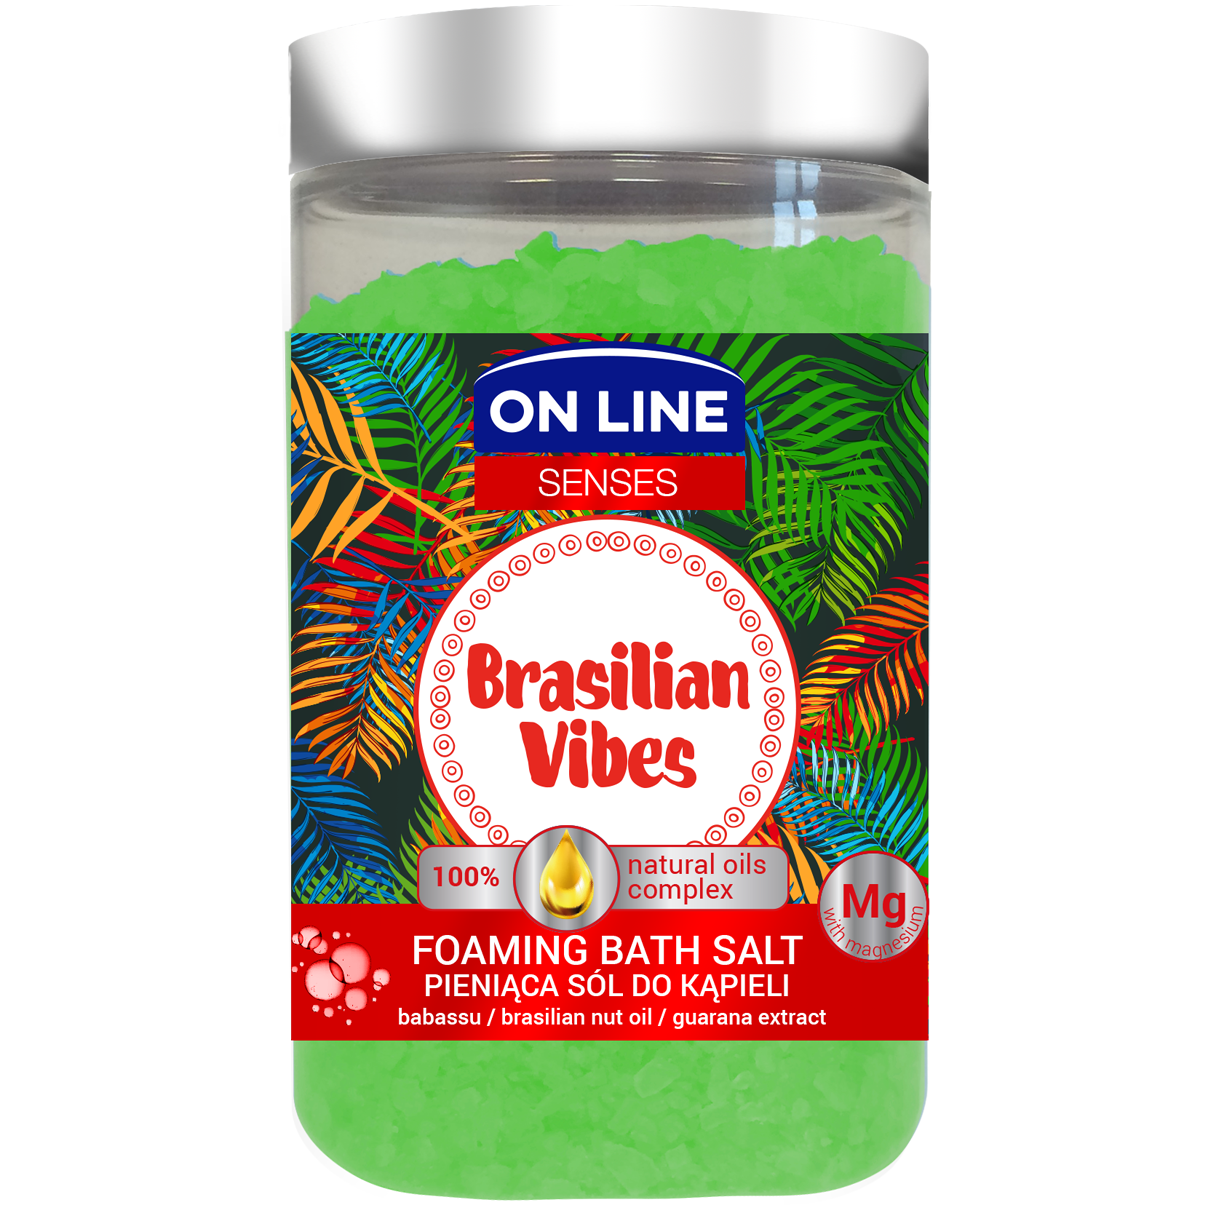 On Line Senses Brasilian пенящаяся соль для ванн, 480 г